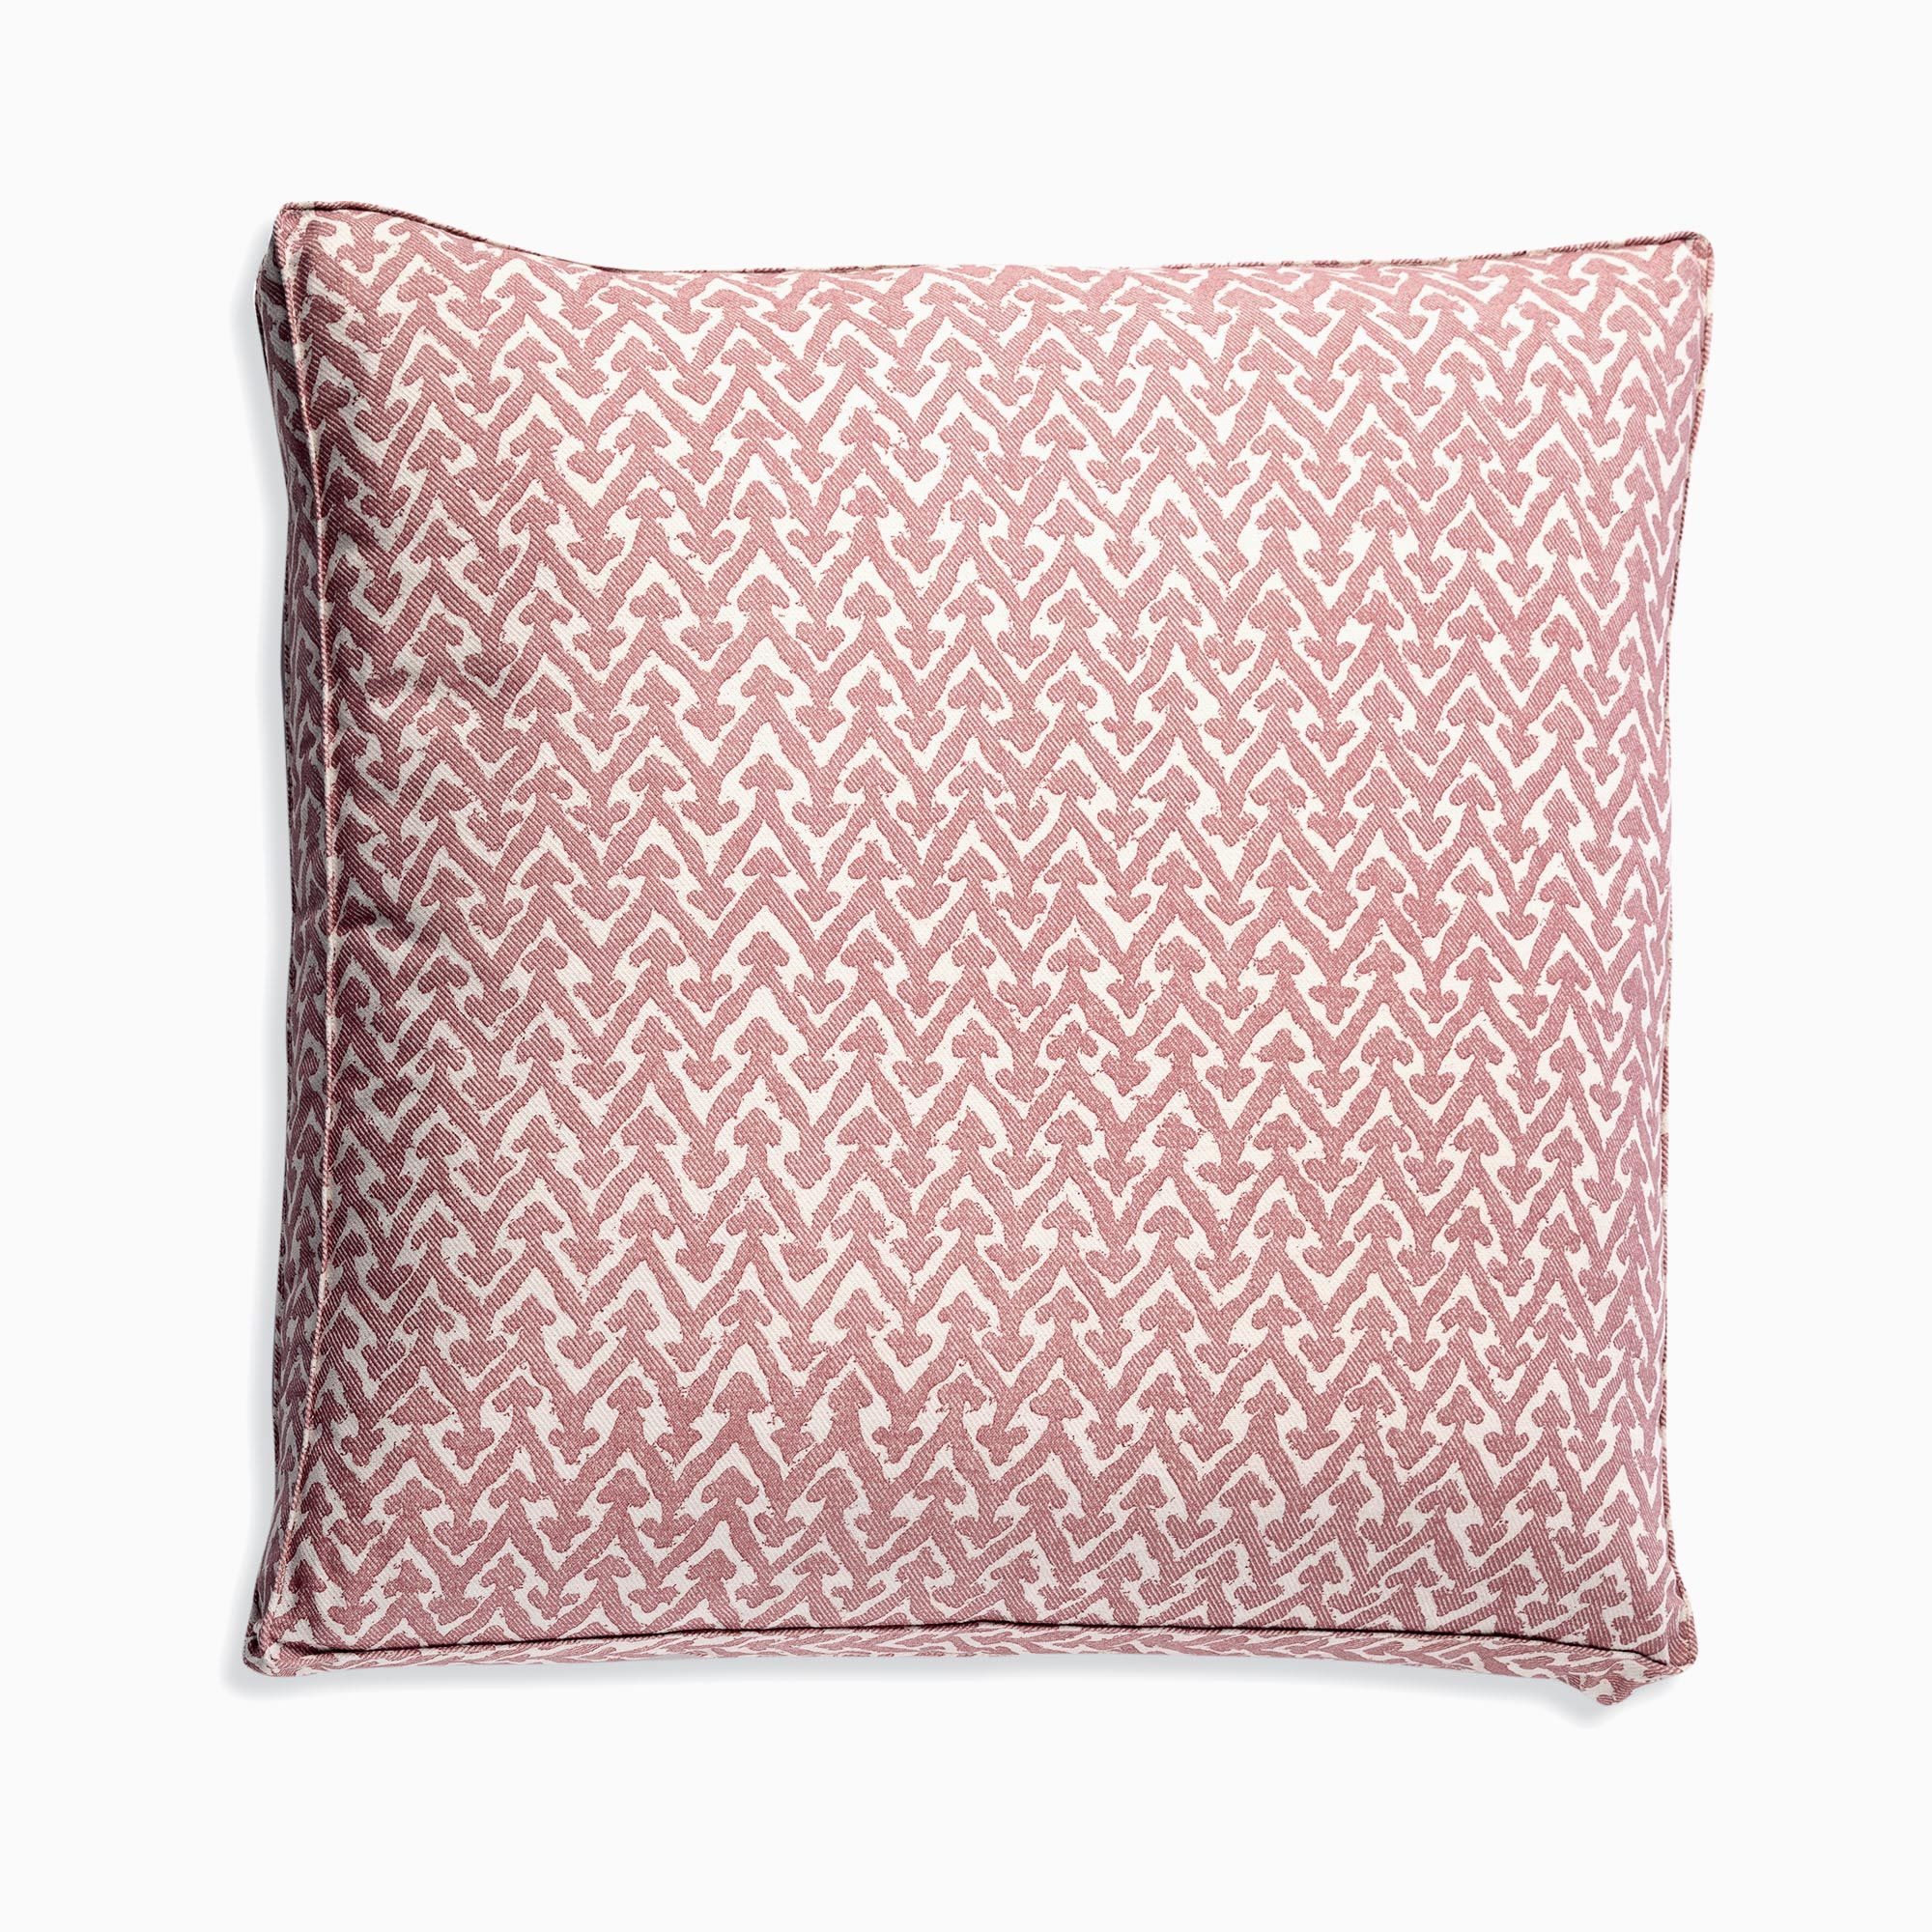 Fermoie Rabanna Cushion Cover Pink 21” X 21”